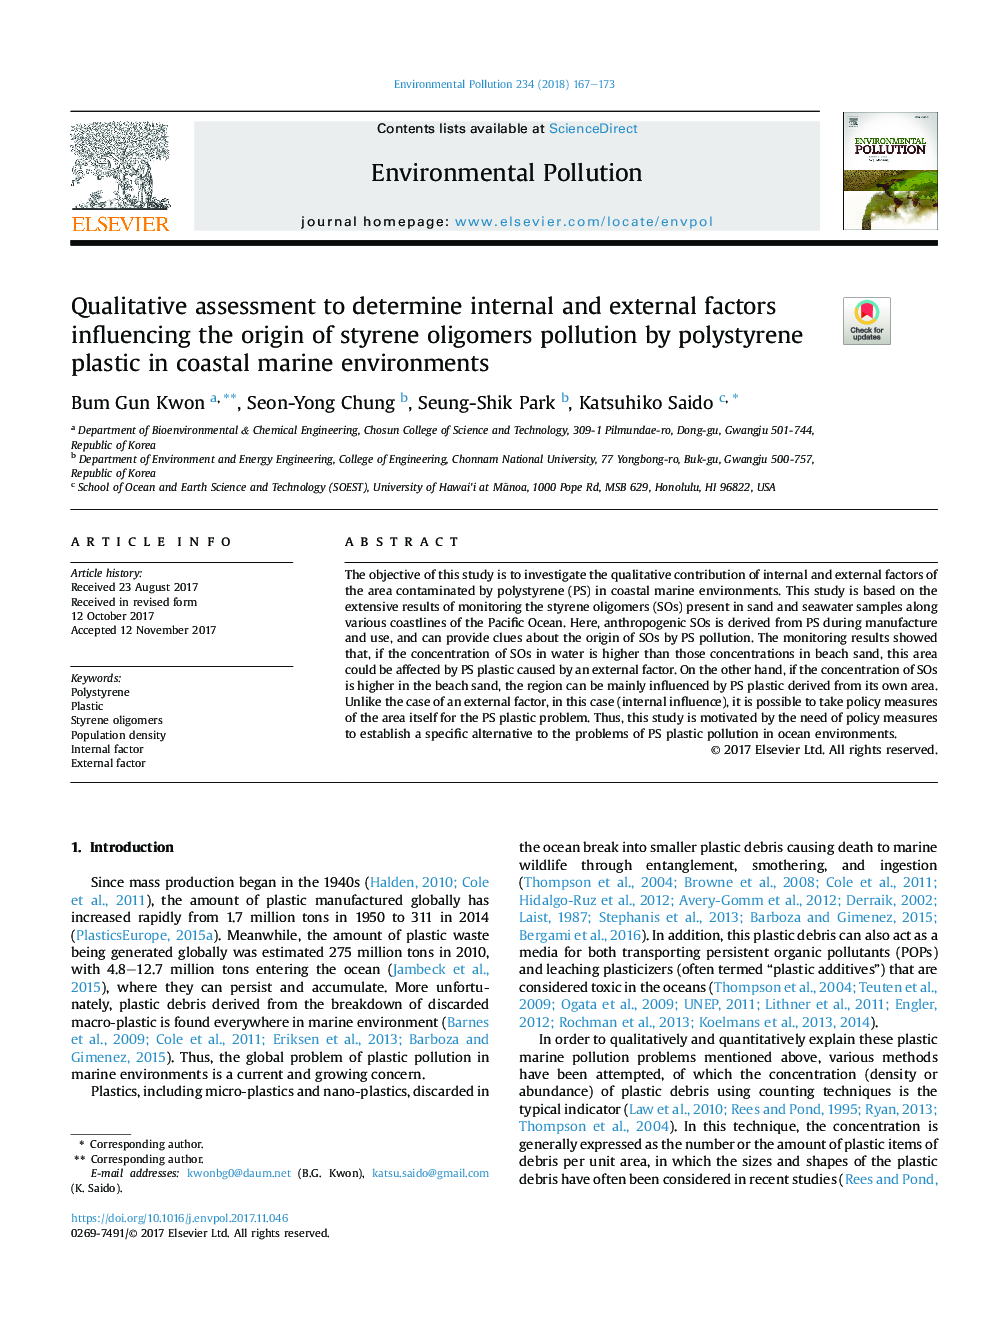 ارزیابی کیفی برای تعیین عوامل داخلی و خارجی منجر به آلودگی الیگومرهای استایرن توسط پلاستیک پلی استایرن در محیط دریایی ساحلی 